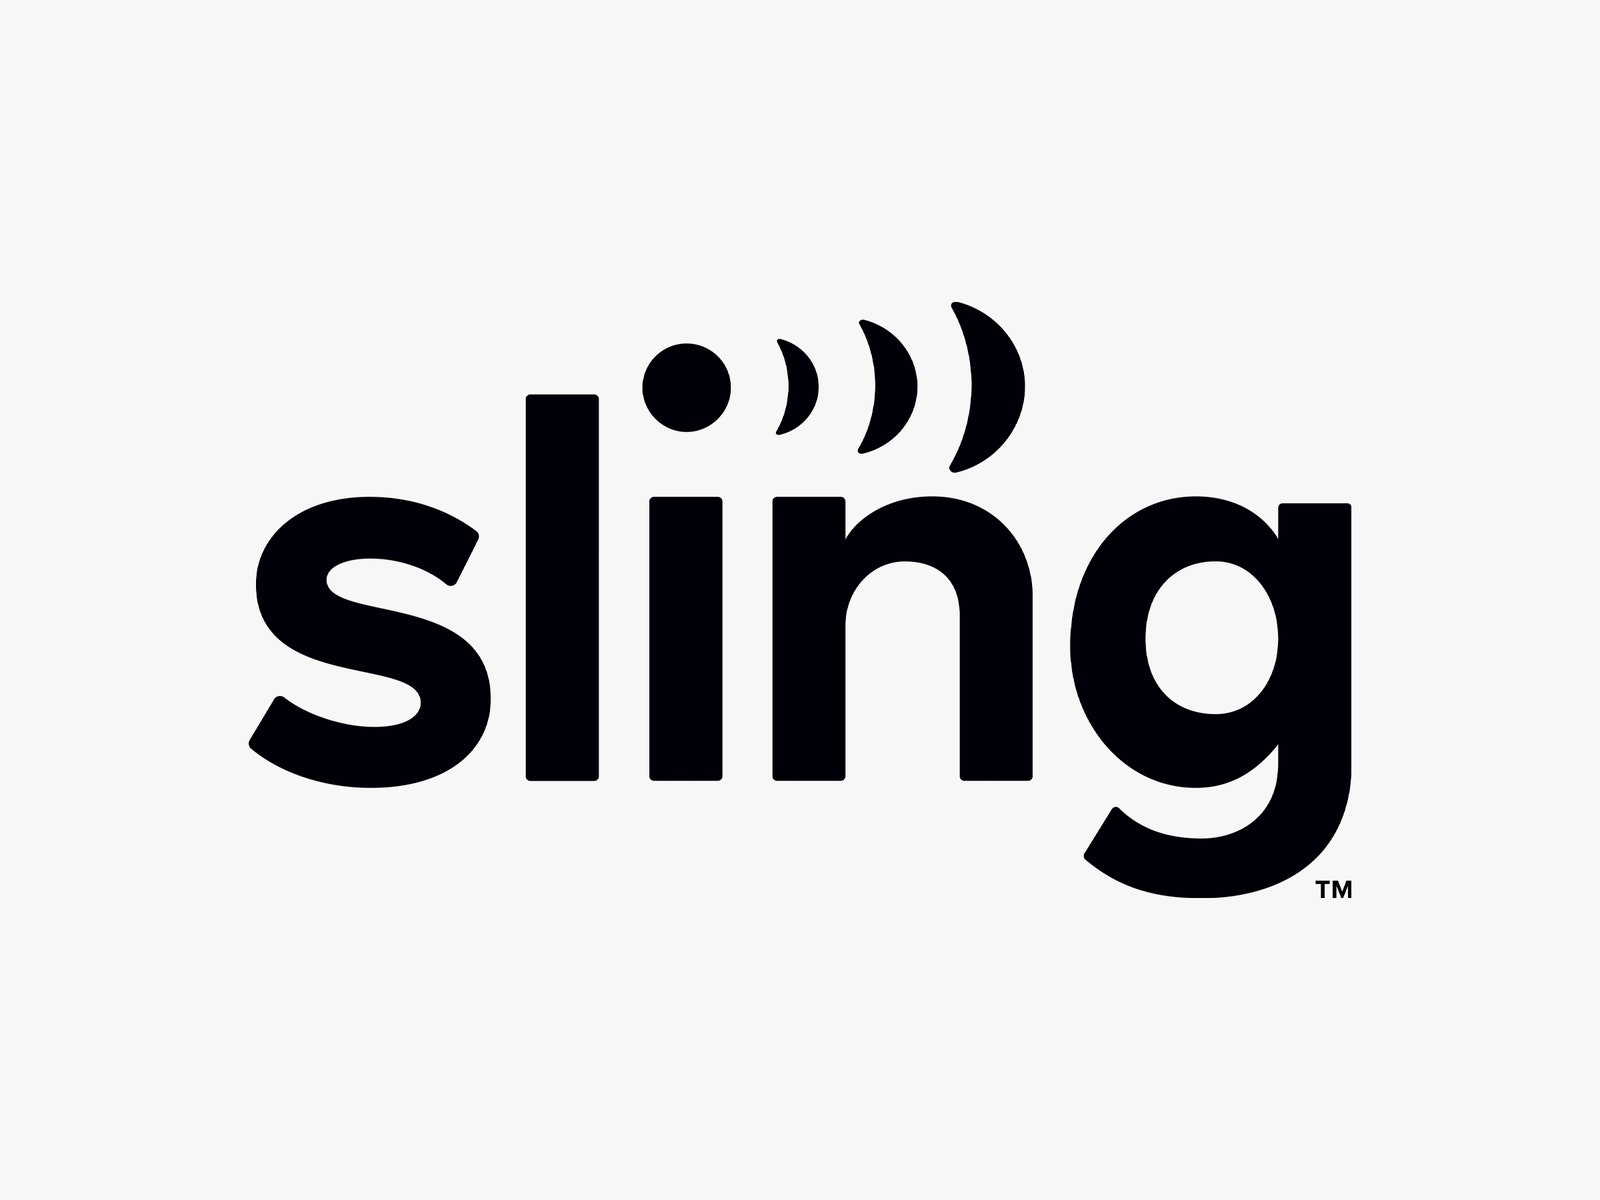 Logo de la télévision Sling